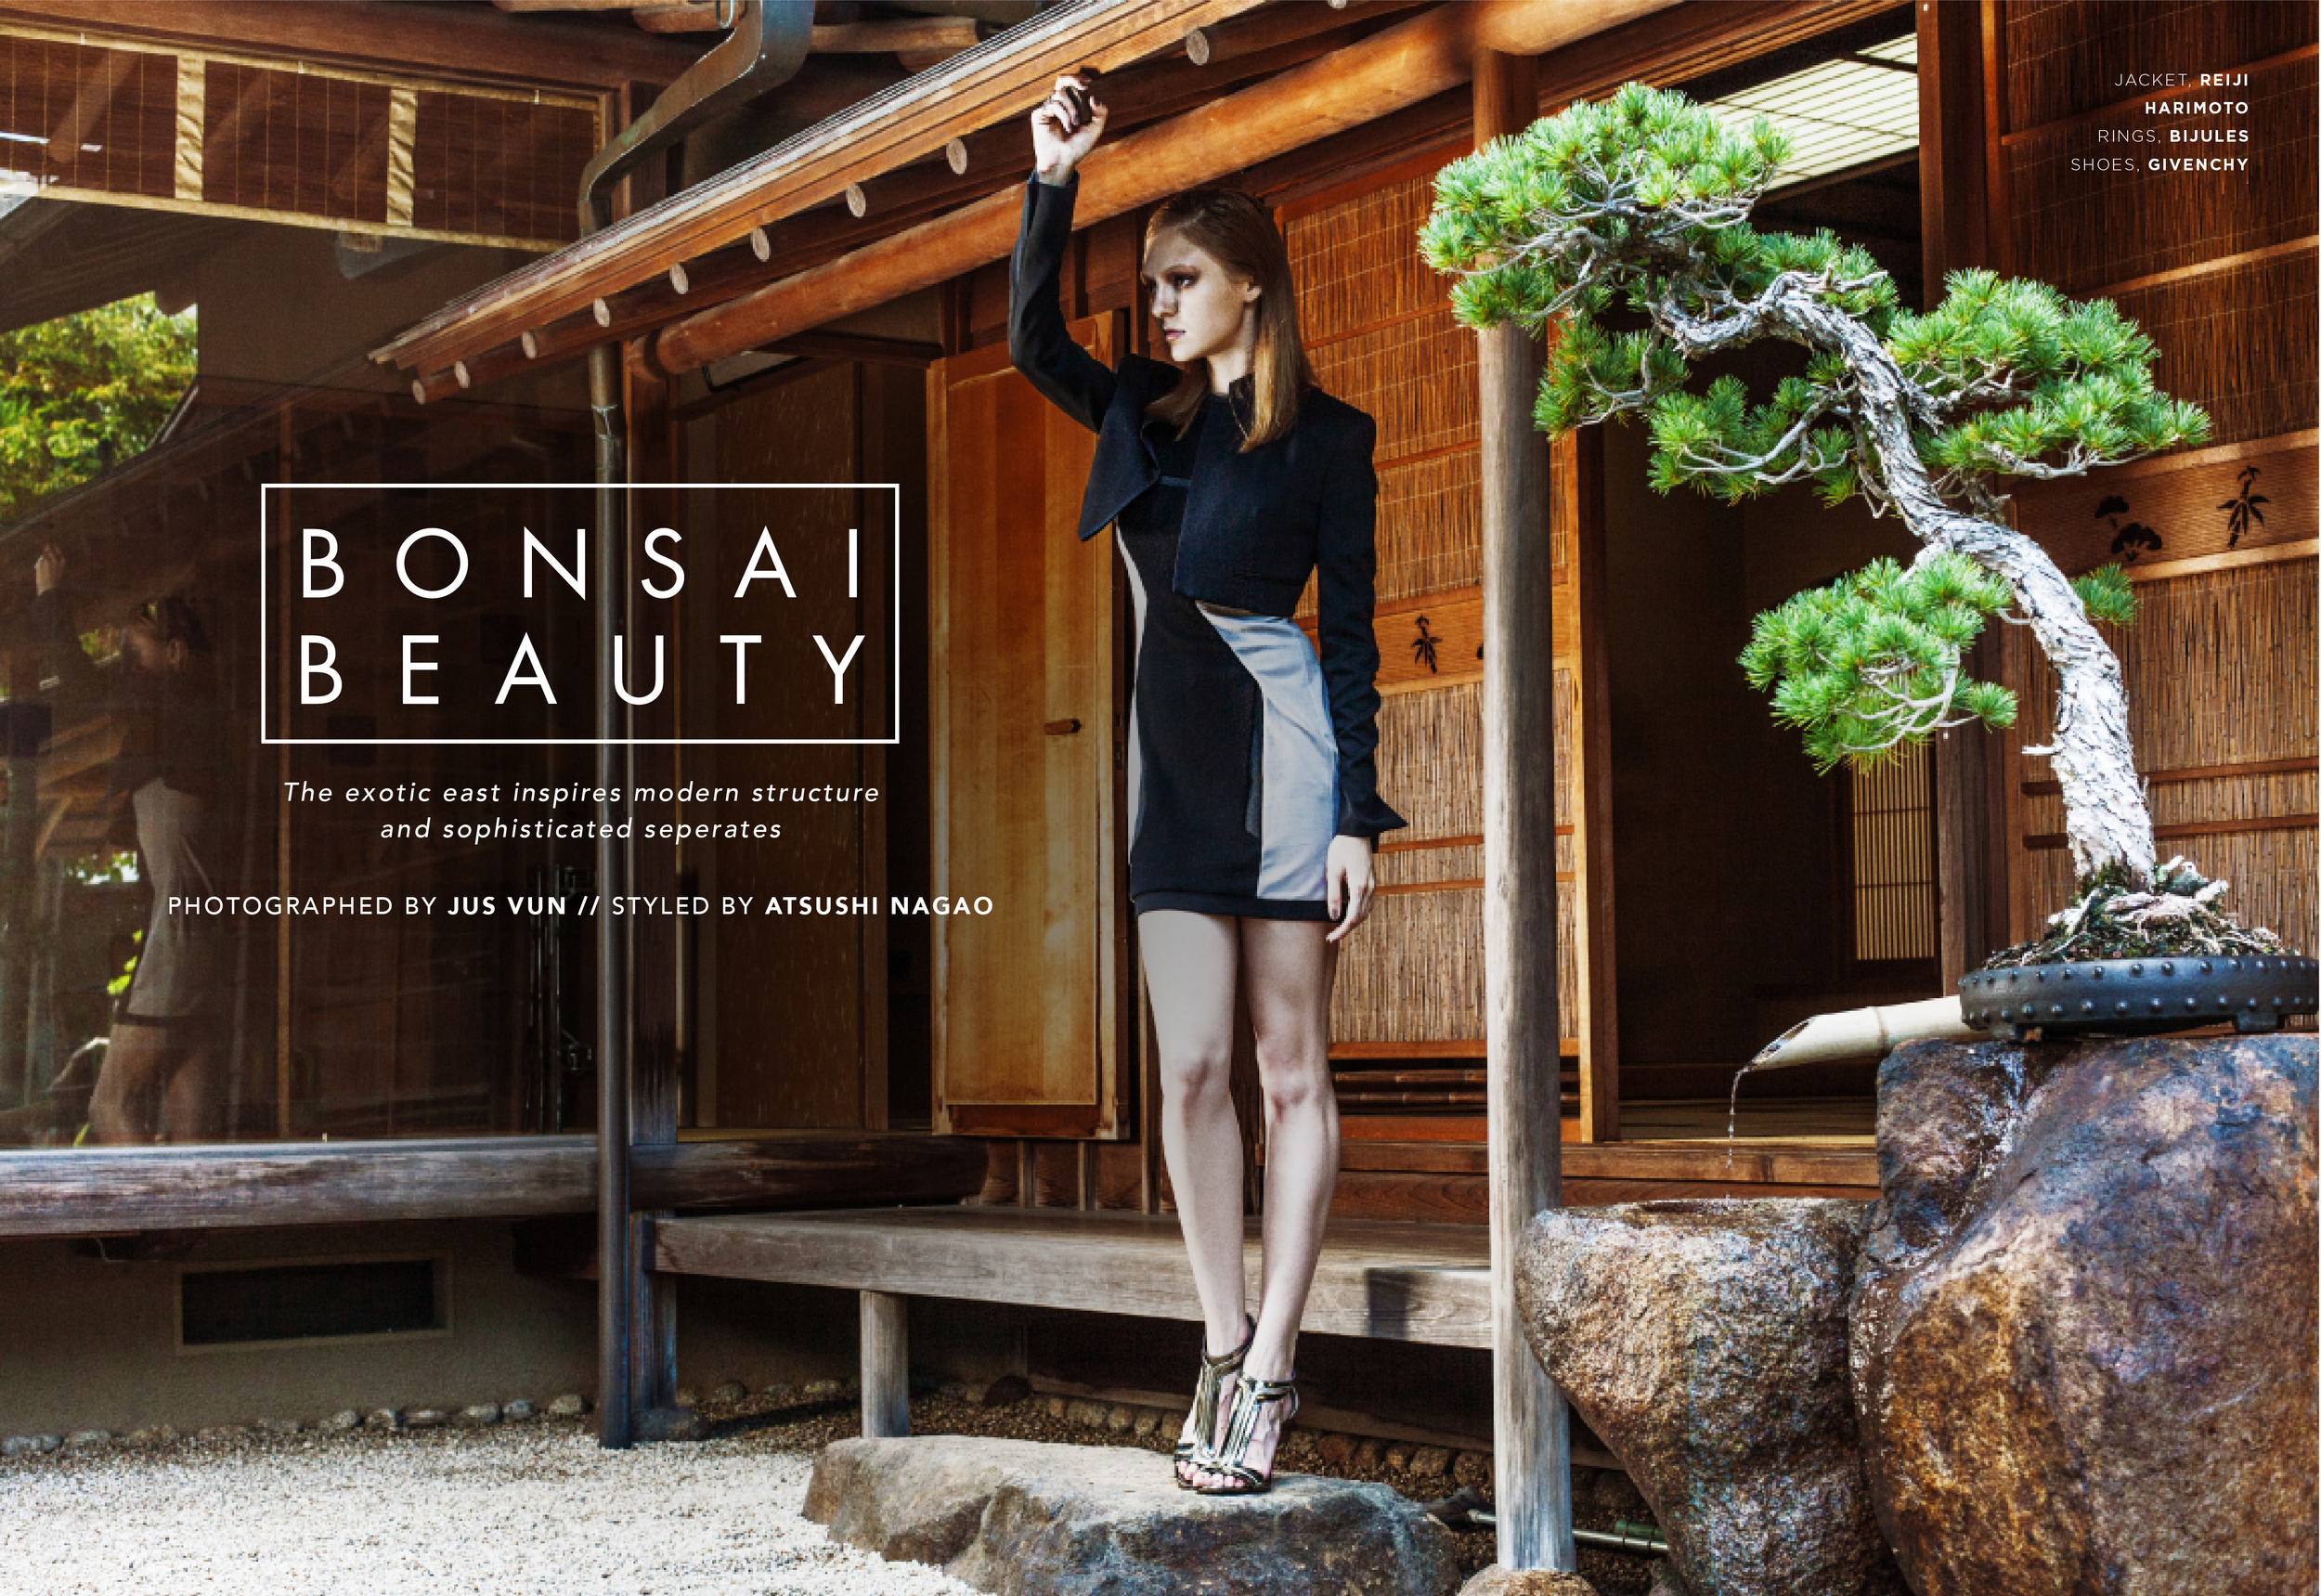 Spread-Bonsai Beauty1.jpg